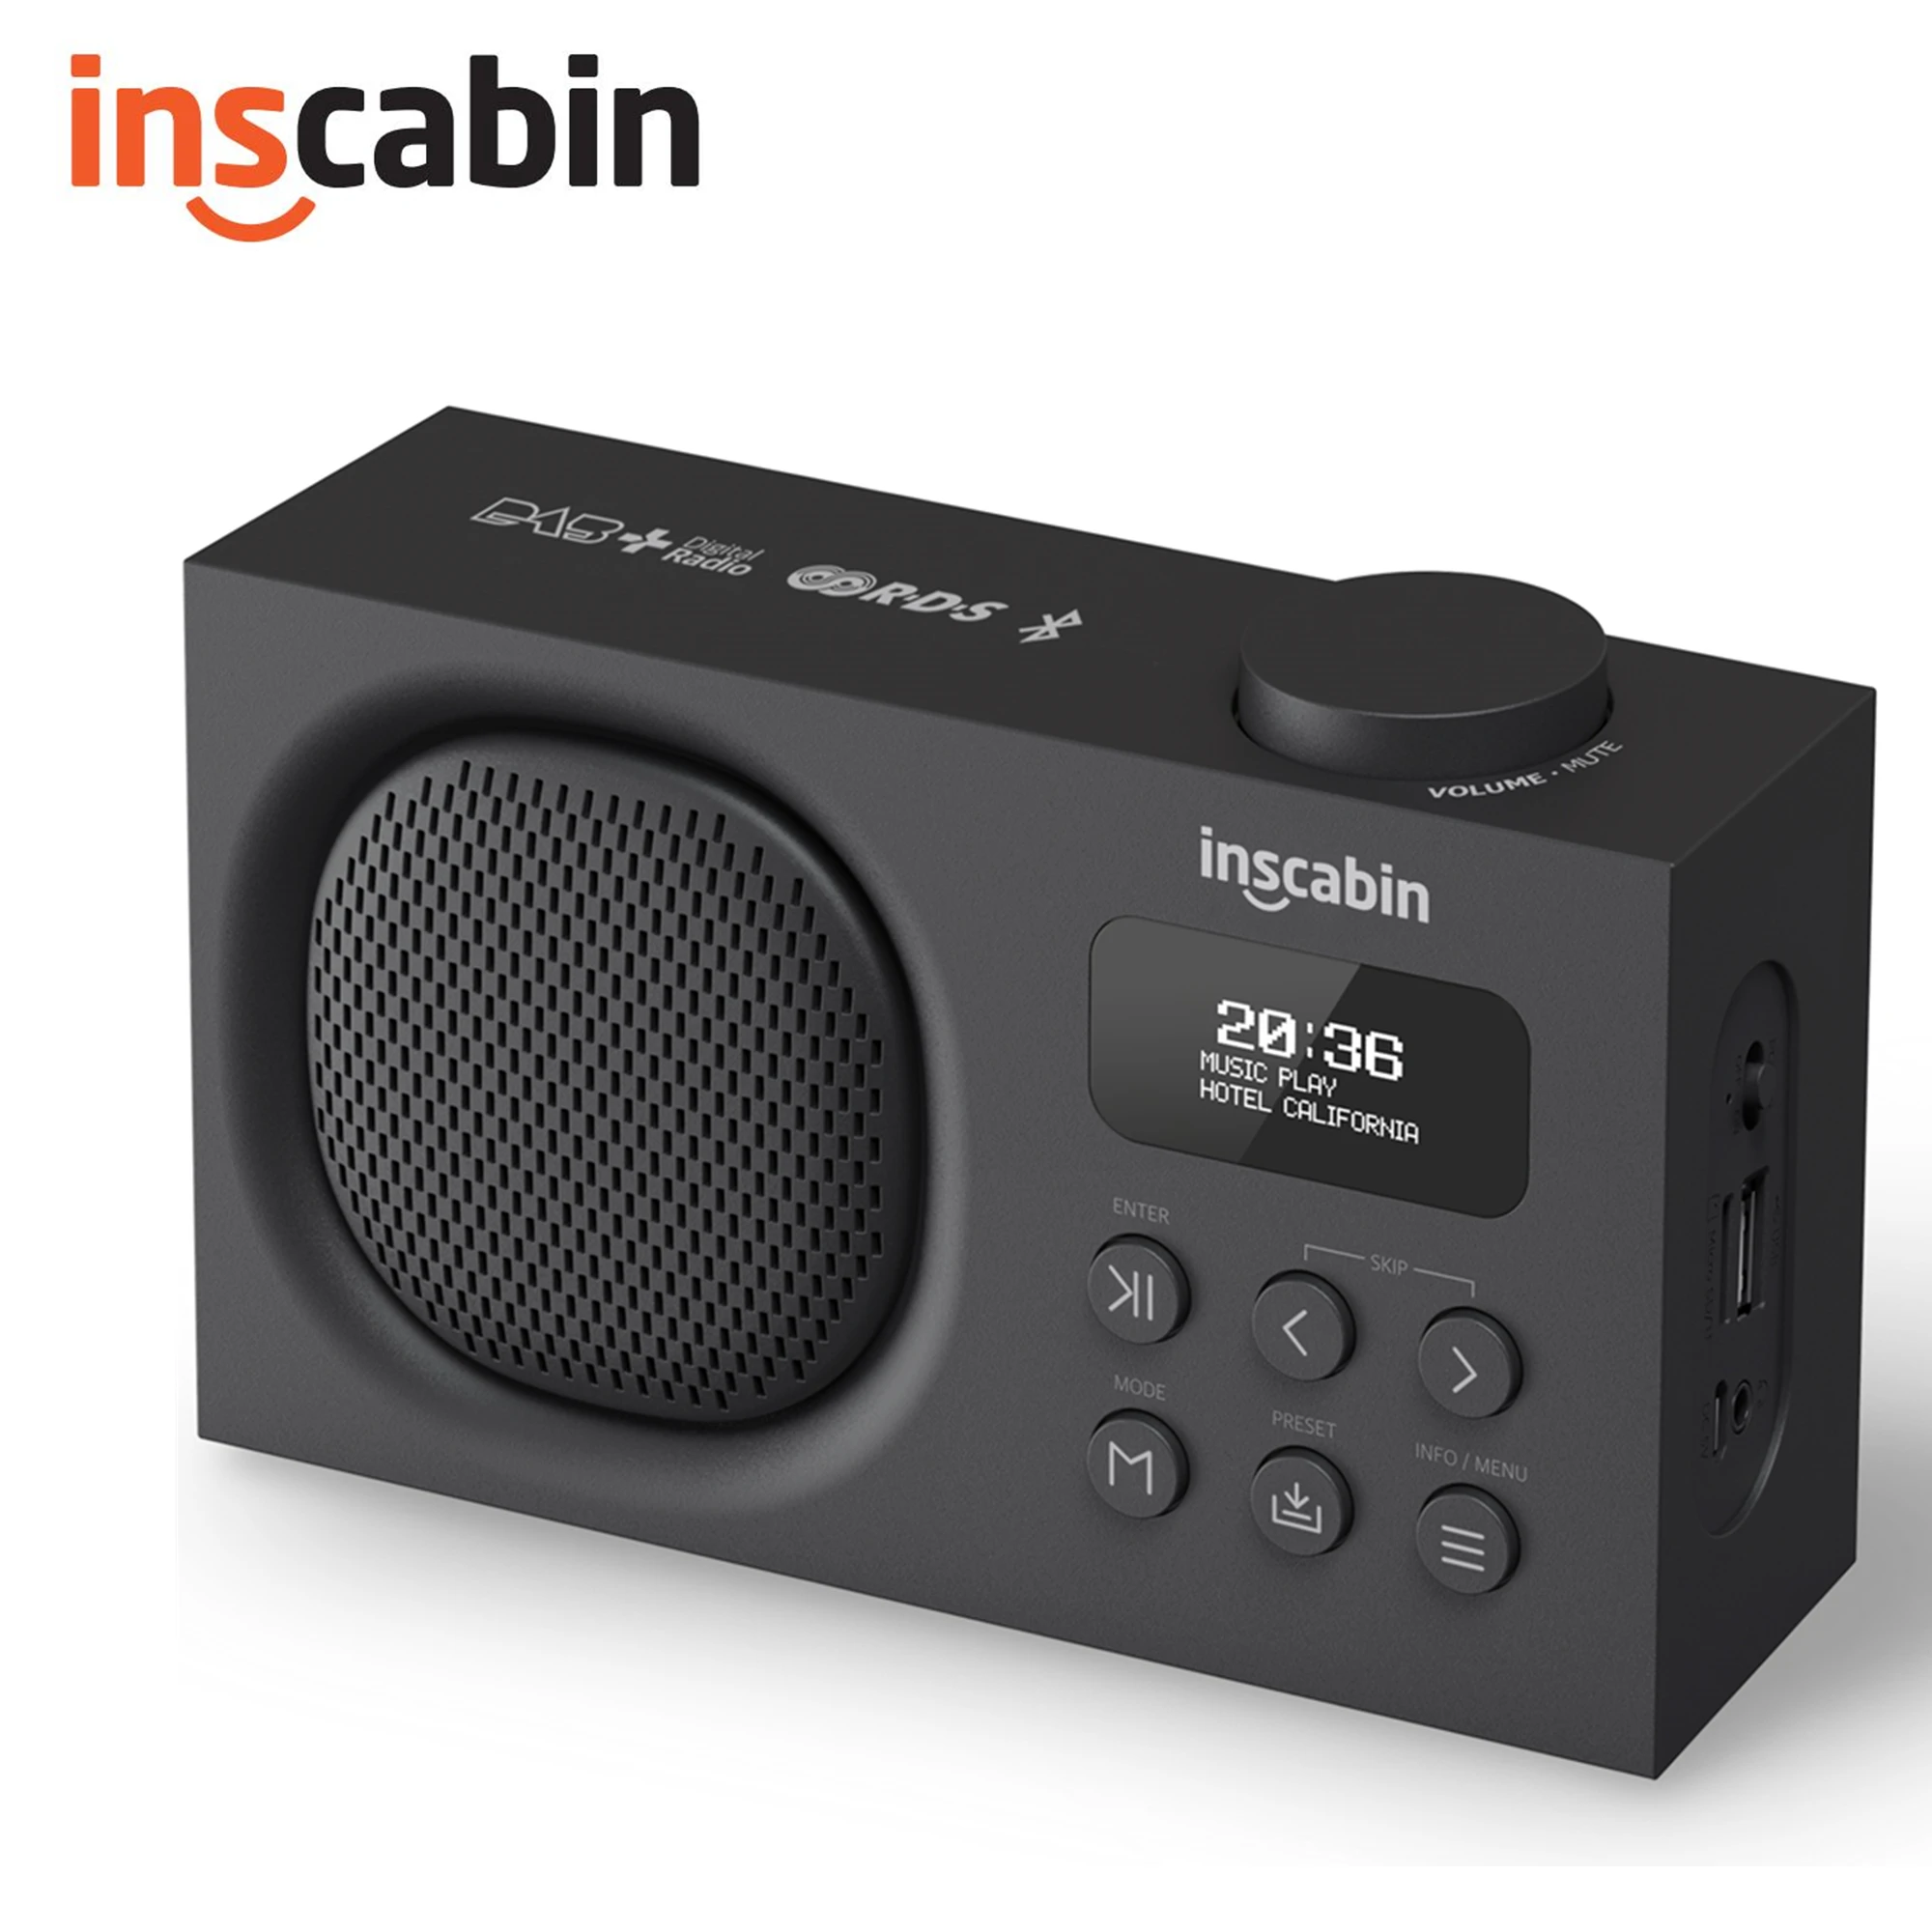 Inscabin D7 Internet DAB/DAB+ Digital Radio, Internet Radio/Digital Radio  with Spotify Connect and Bluetooth/